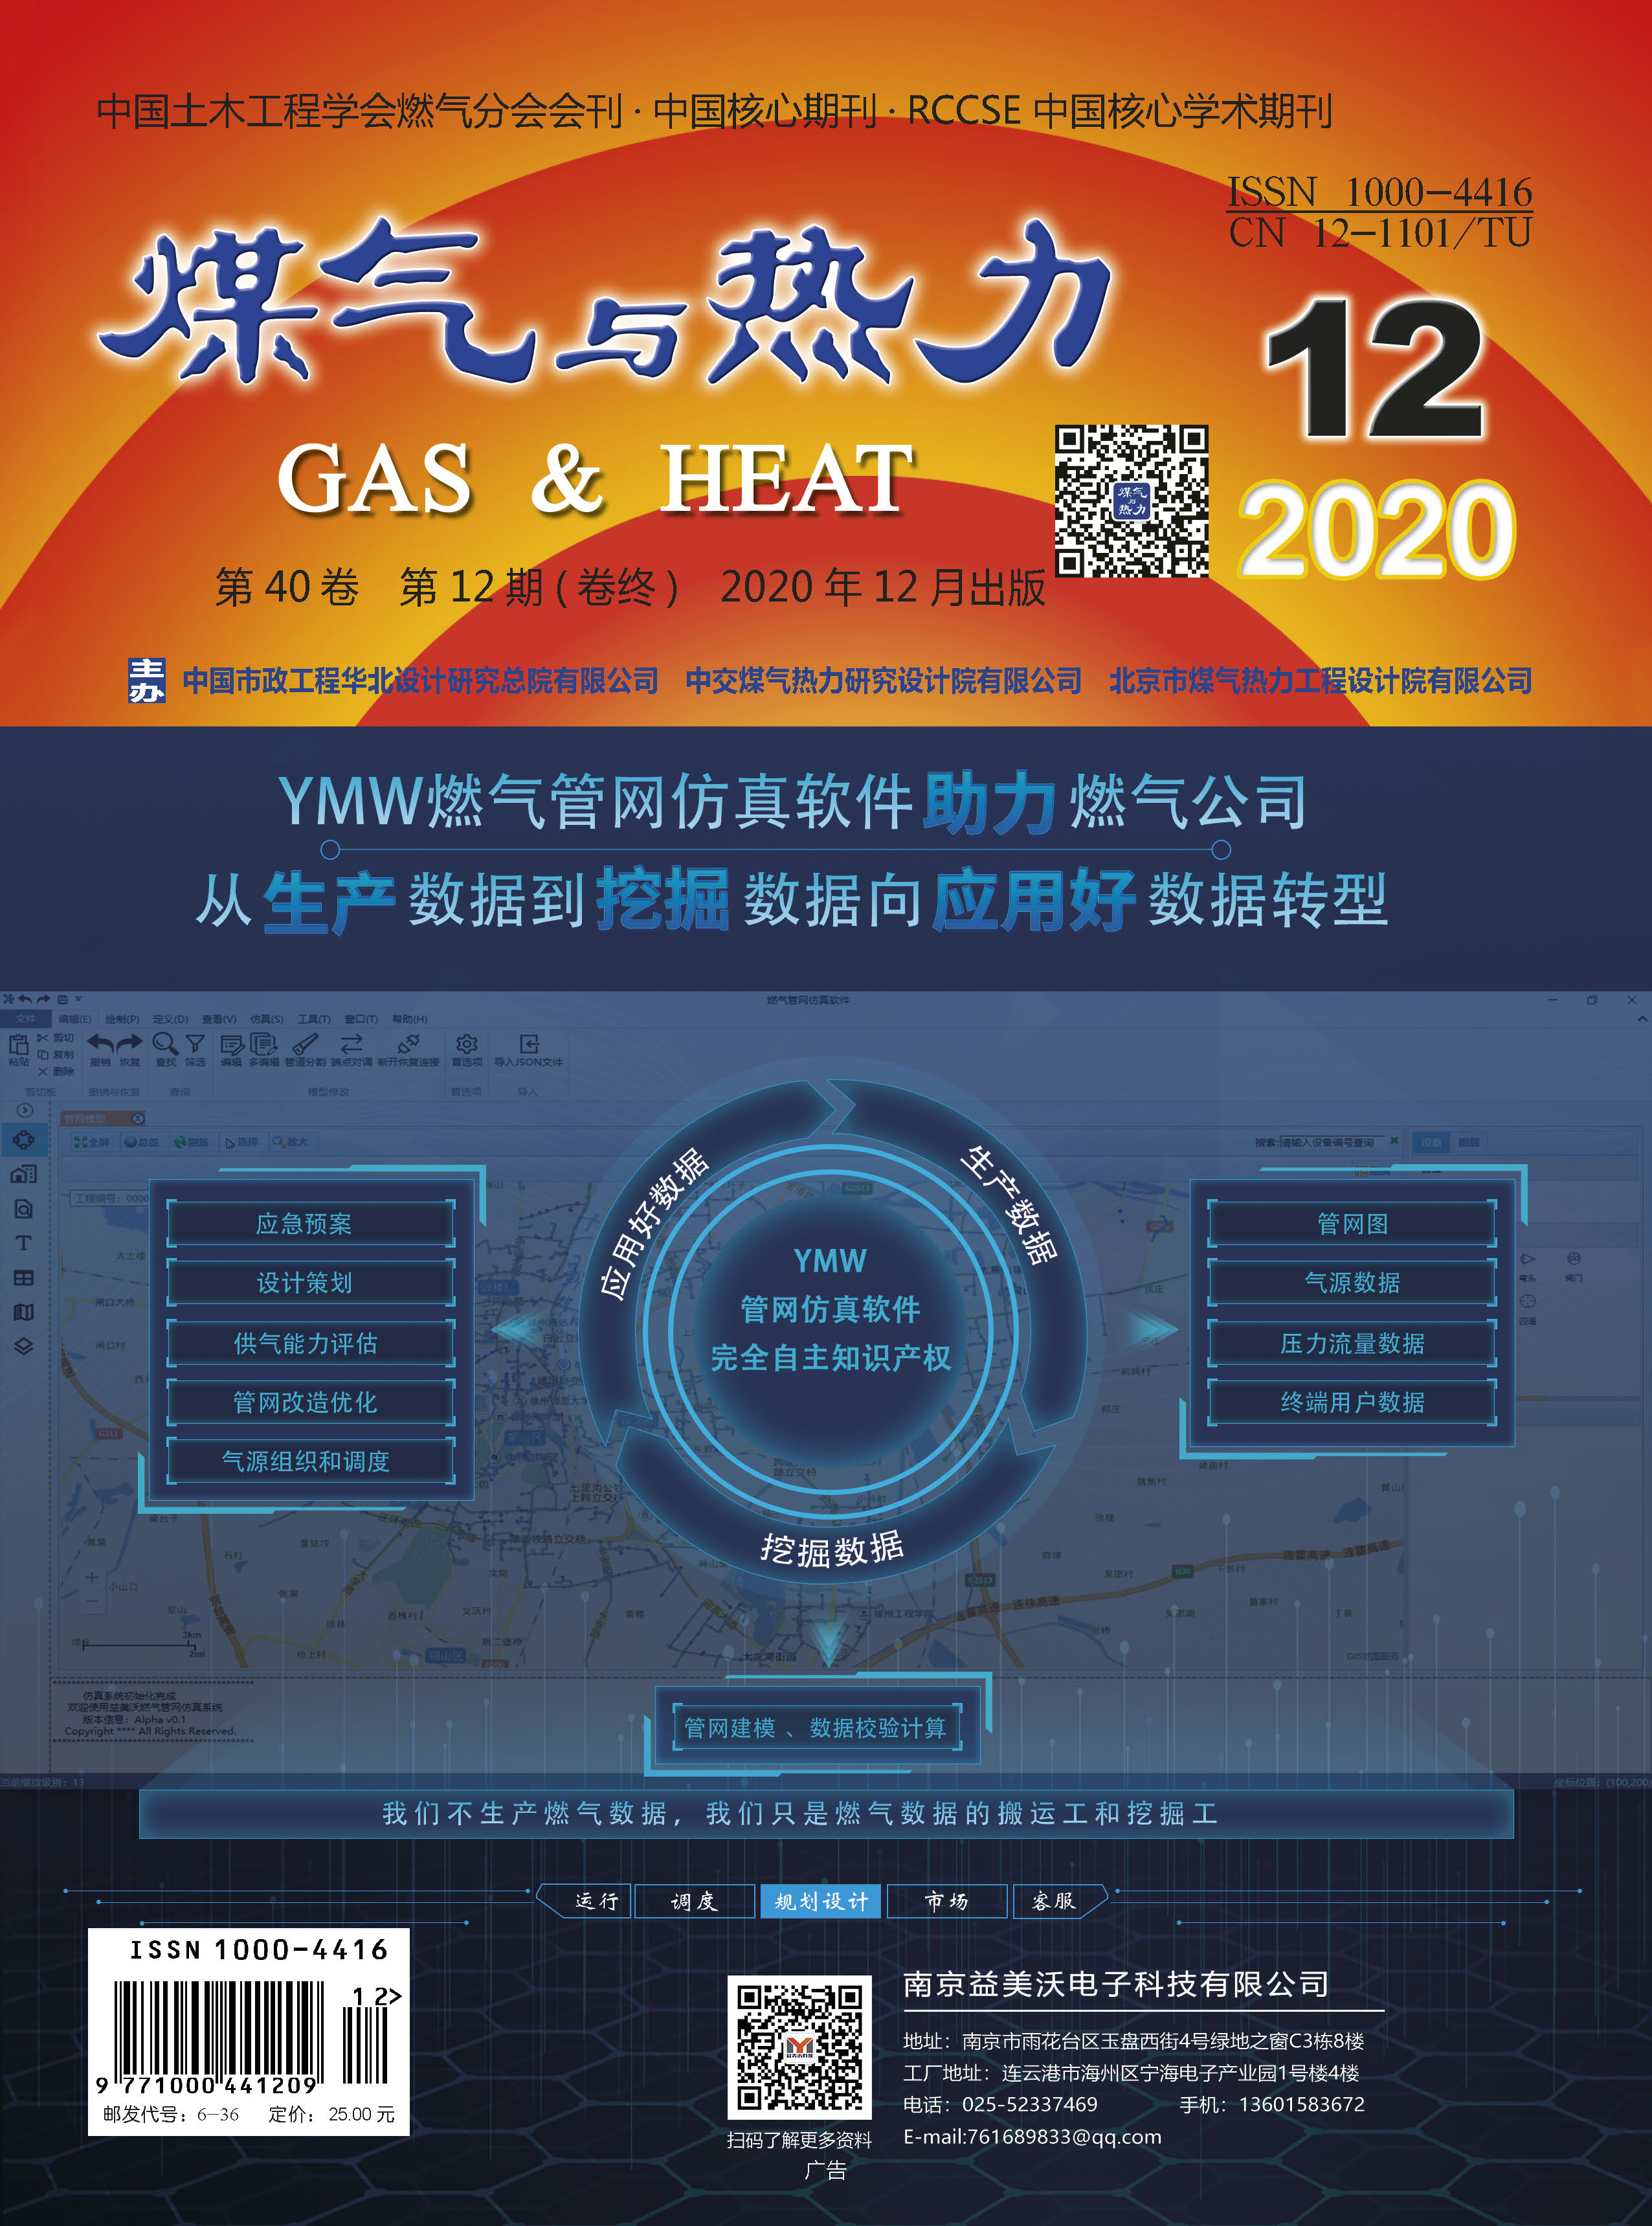 《煤气与热力》2020年12月刊